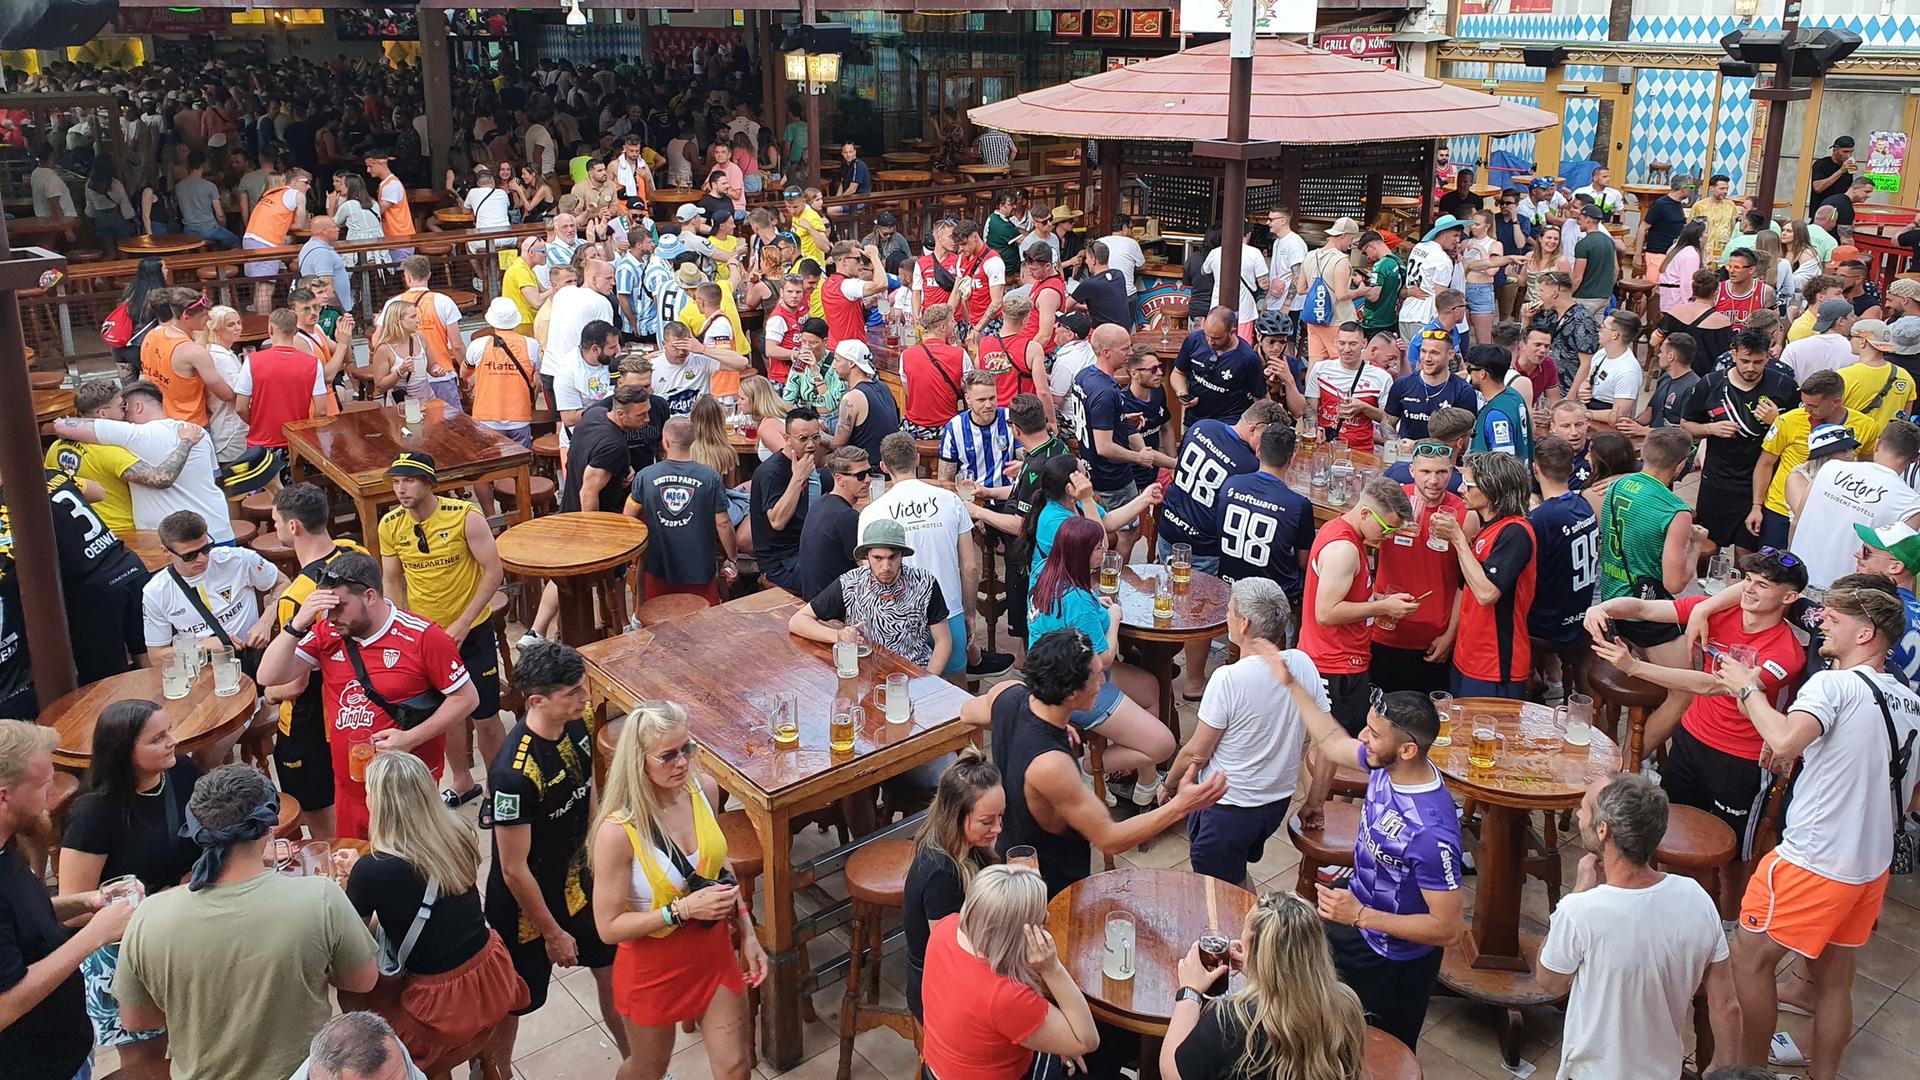 Das Partyvolk vergnügt sich im "Bierkönig" auf Mallorca - zum Vergnügen gehören auch die großen Ballermann-Hits wie "Layla".